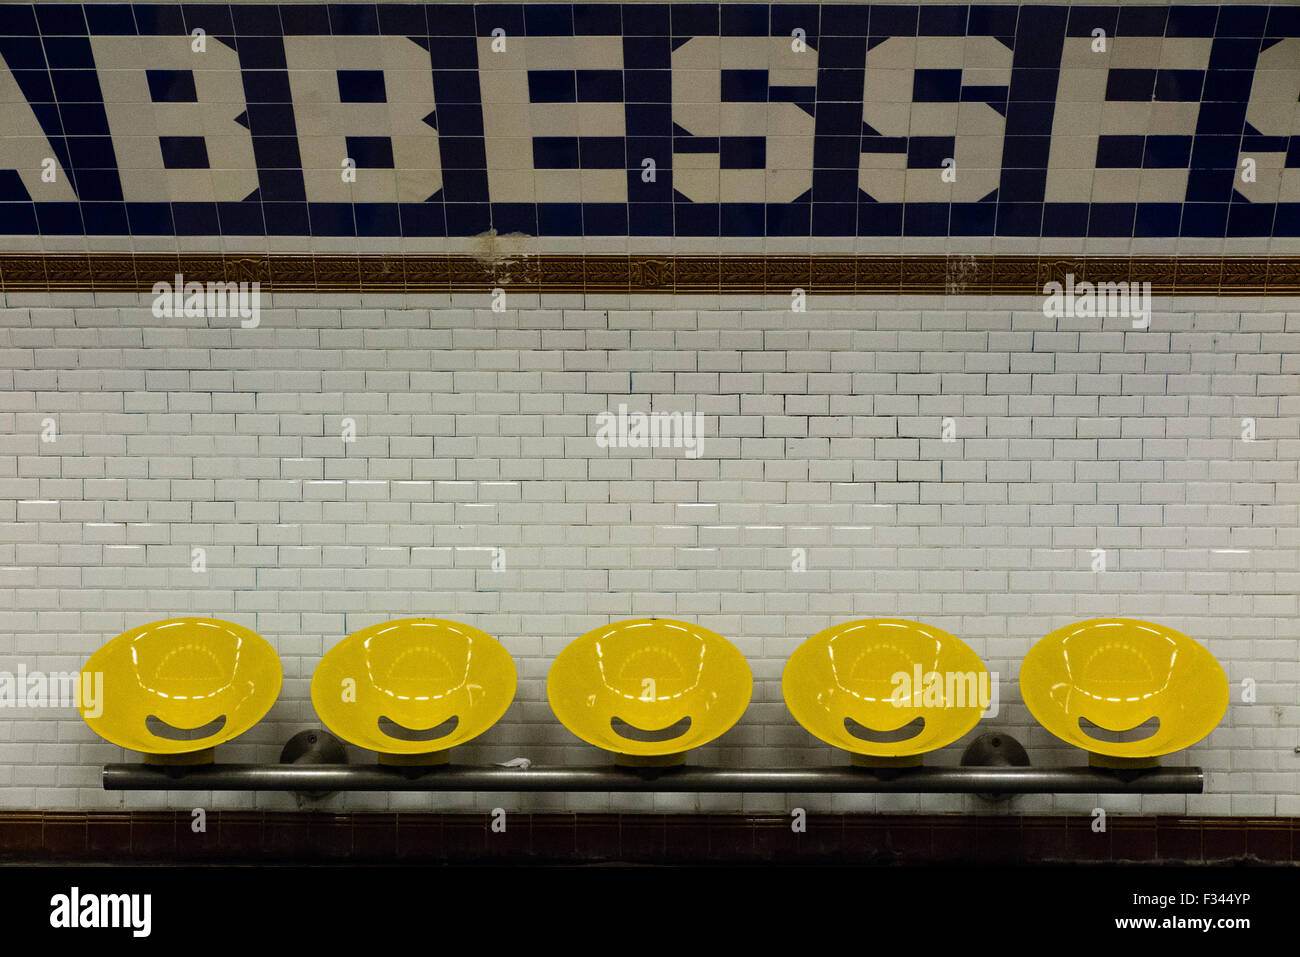 Plate-forme de la station de métro Abbesses, Paris, France Banque D'Images